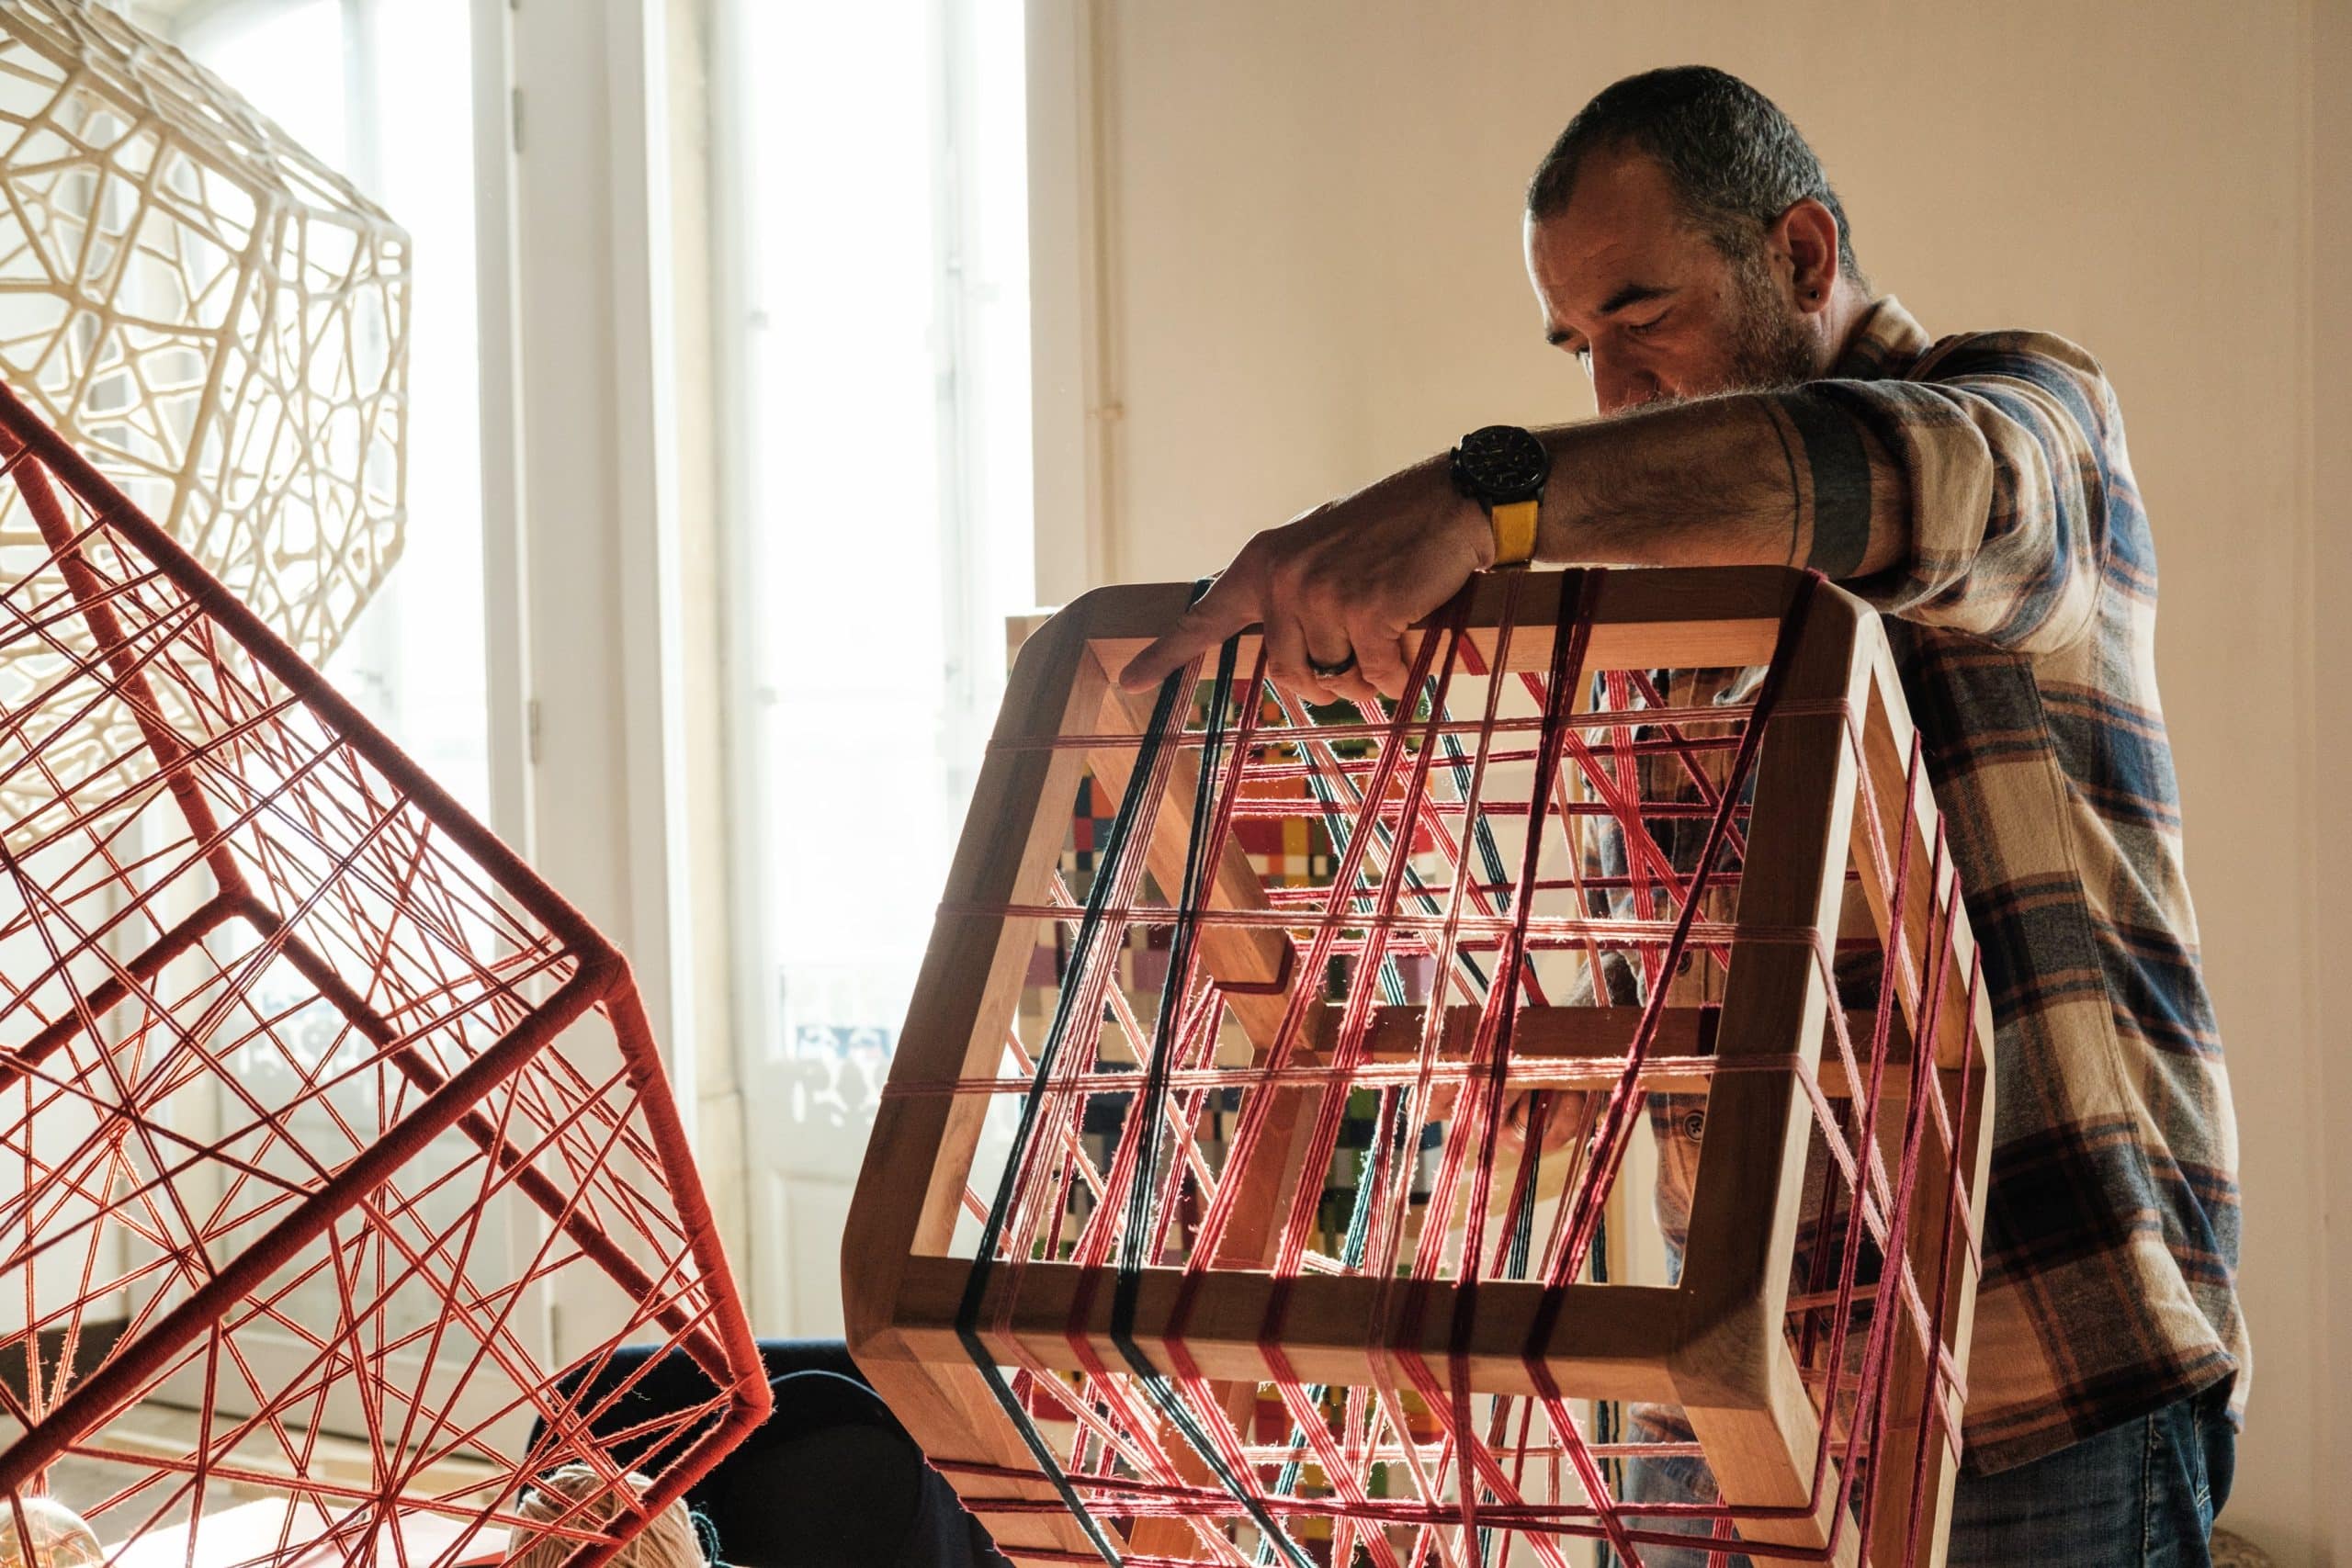 Artesão dá acabamentos em estrutura cúbica de madeira, tecendo fios vermelhos.